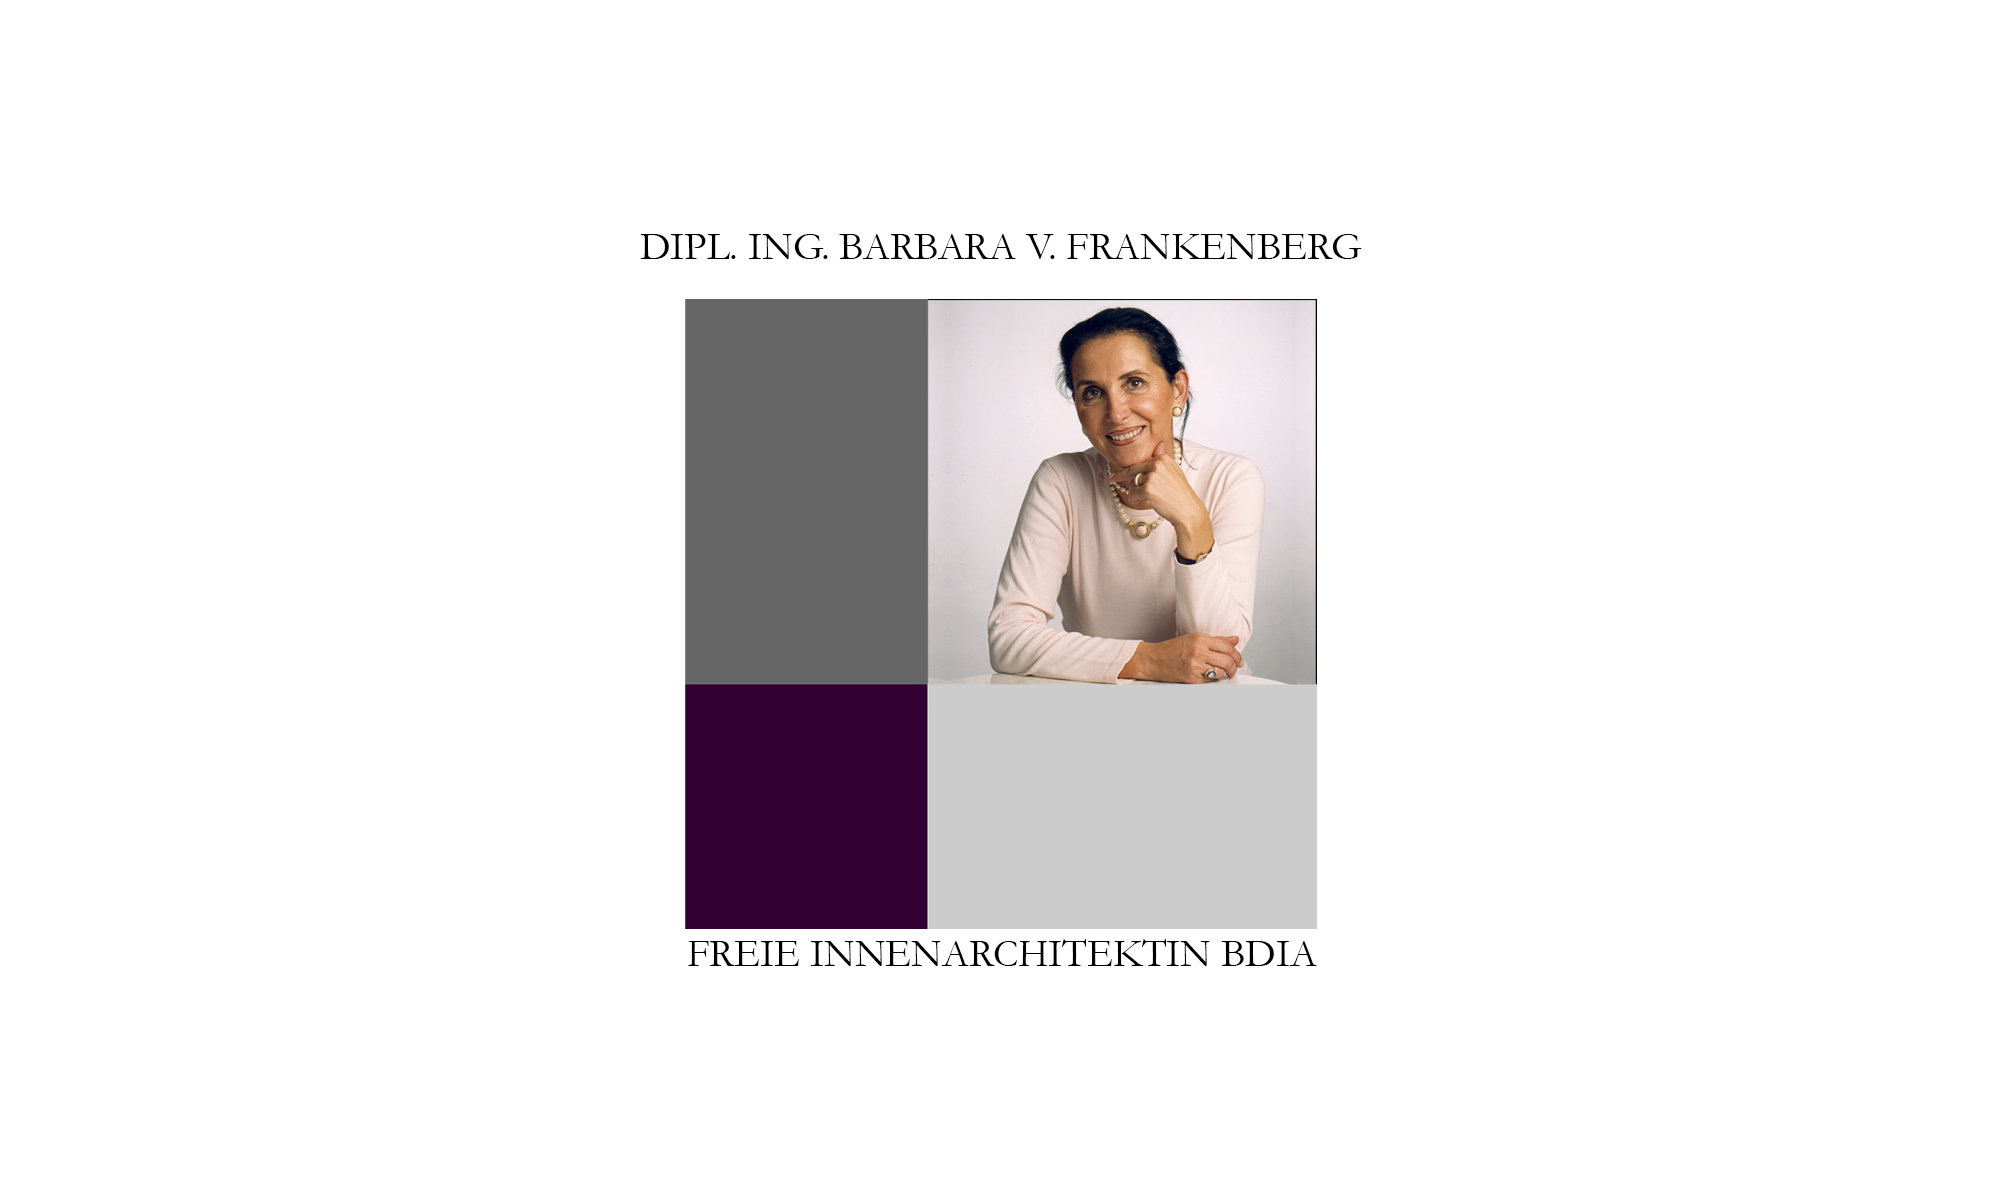 Barbara v. Frankenberg, Freie Innenarchitektin BDIA